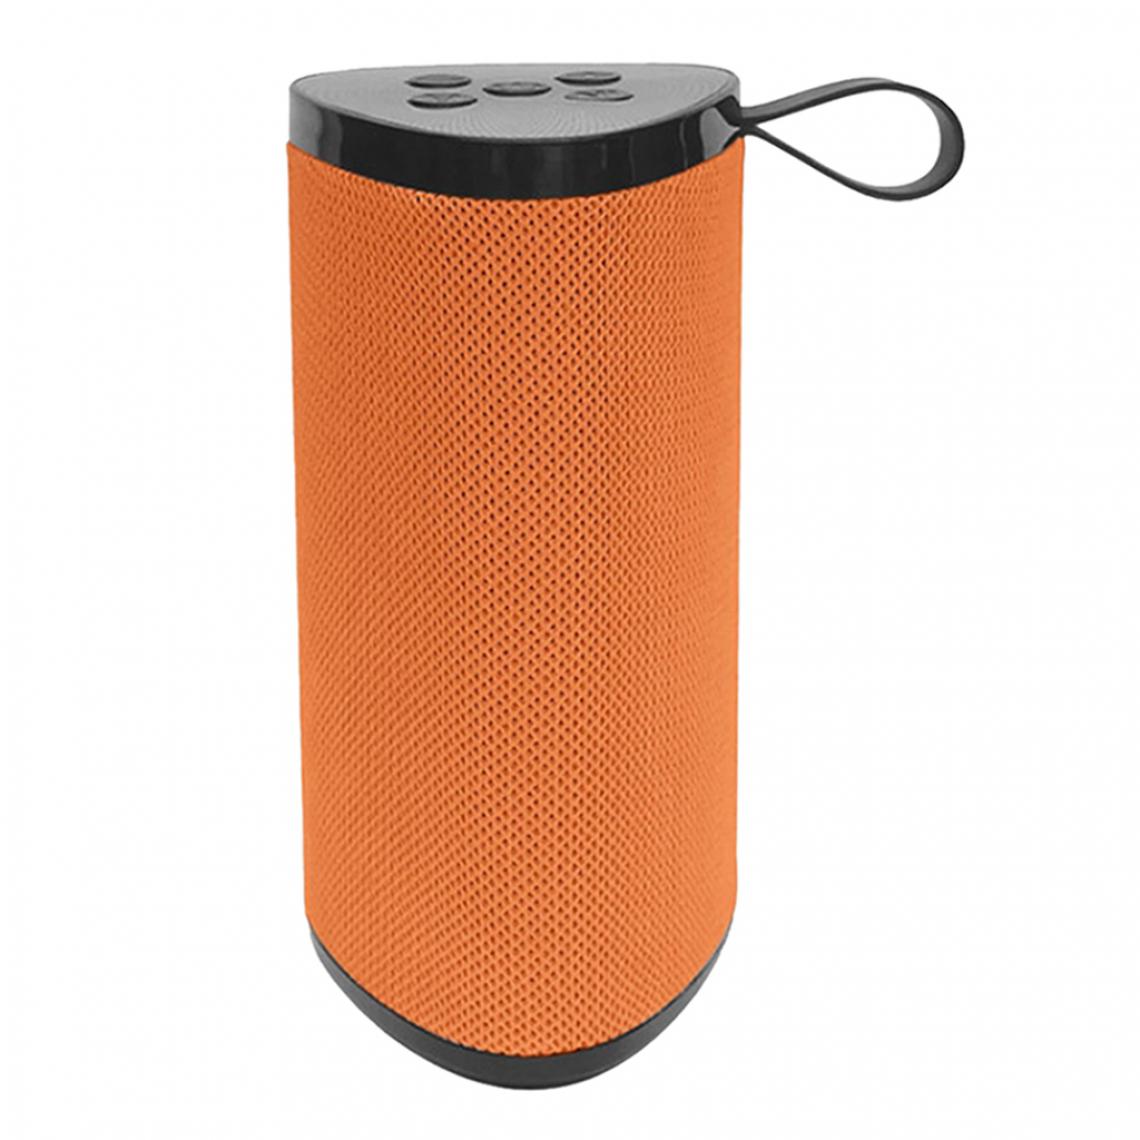 marque generique - Haut-parleur Bluetooth Sans Fil Portable Stéréo Bass Loud Bass Orange - Barre de son